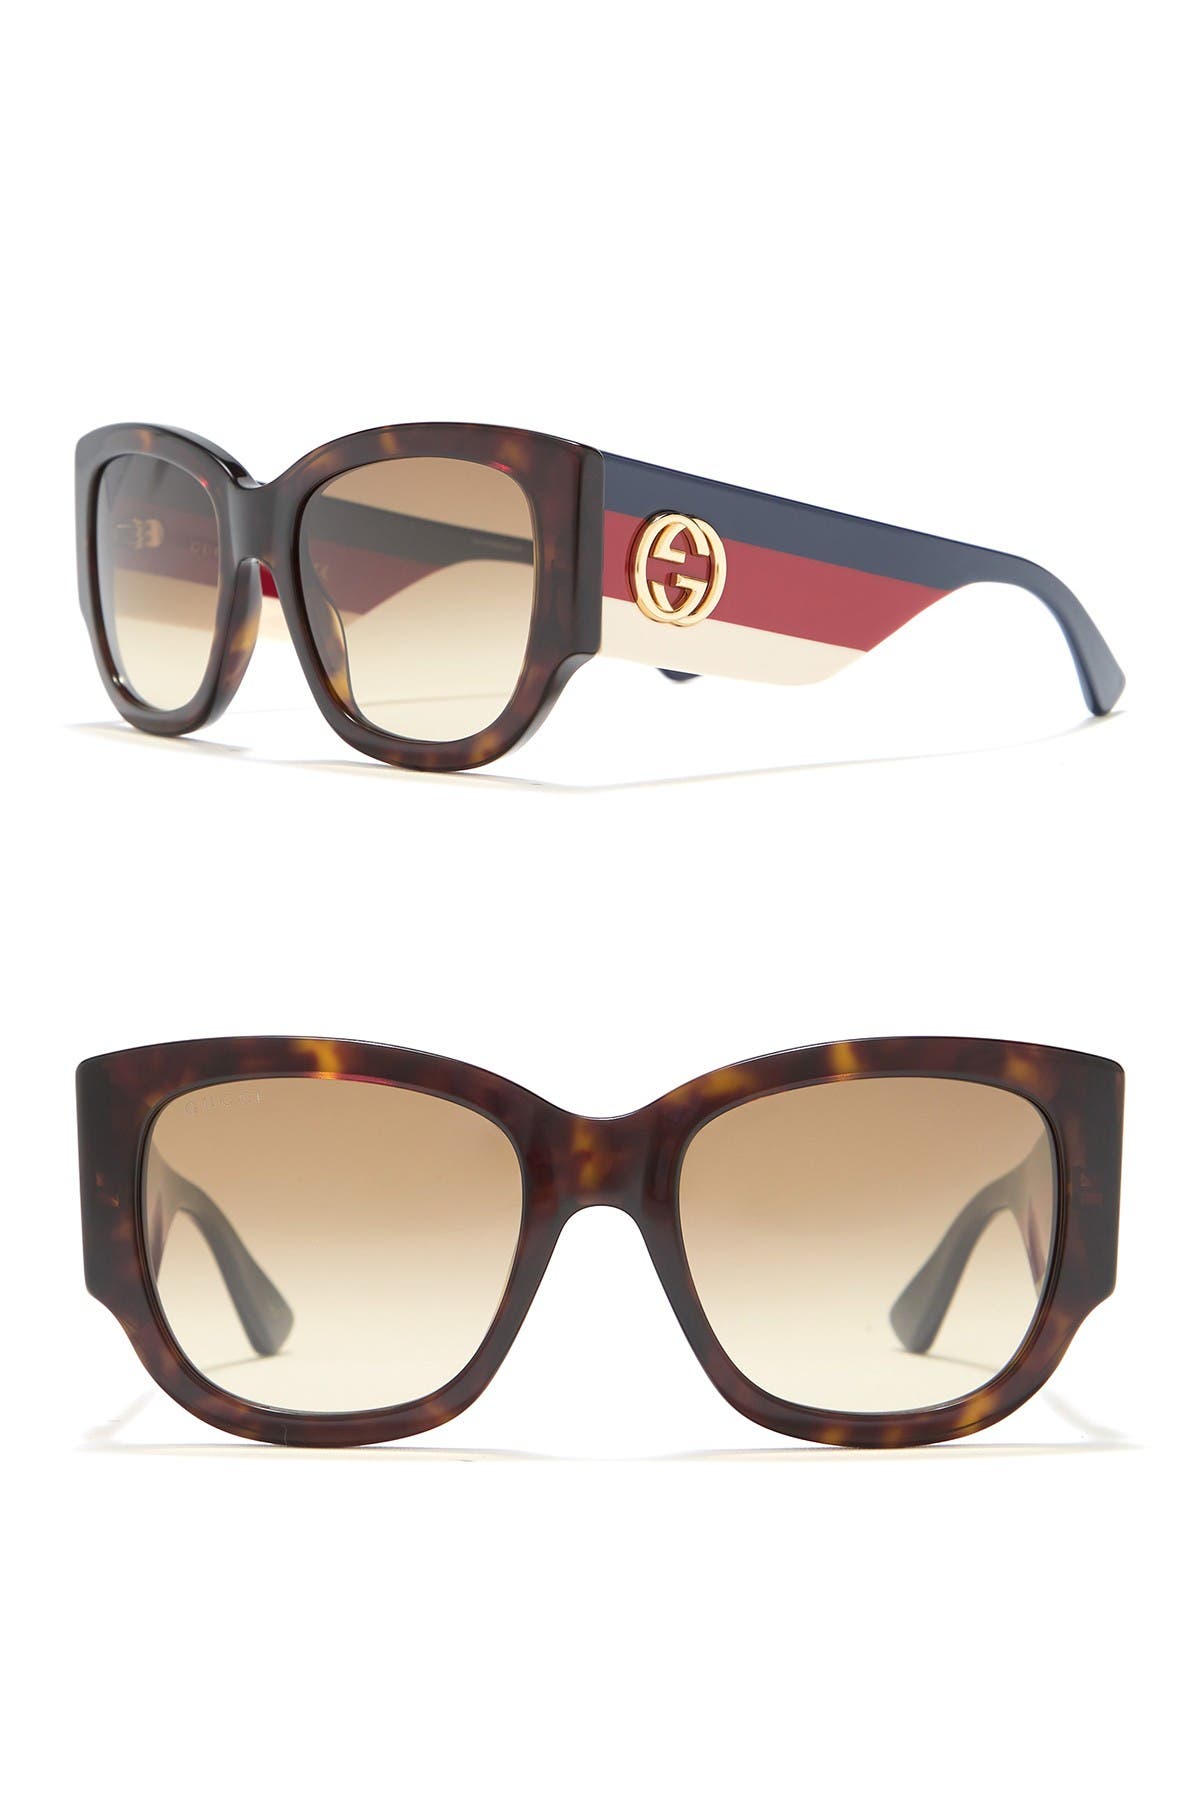 gucci 53mm square sunglasses